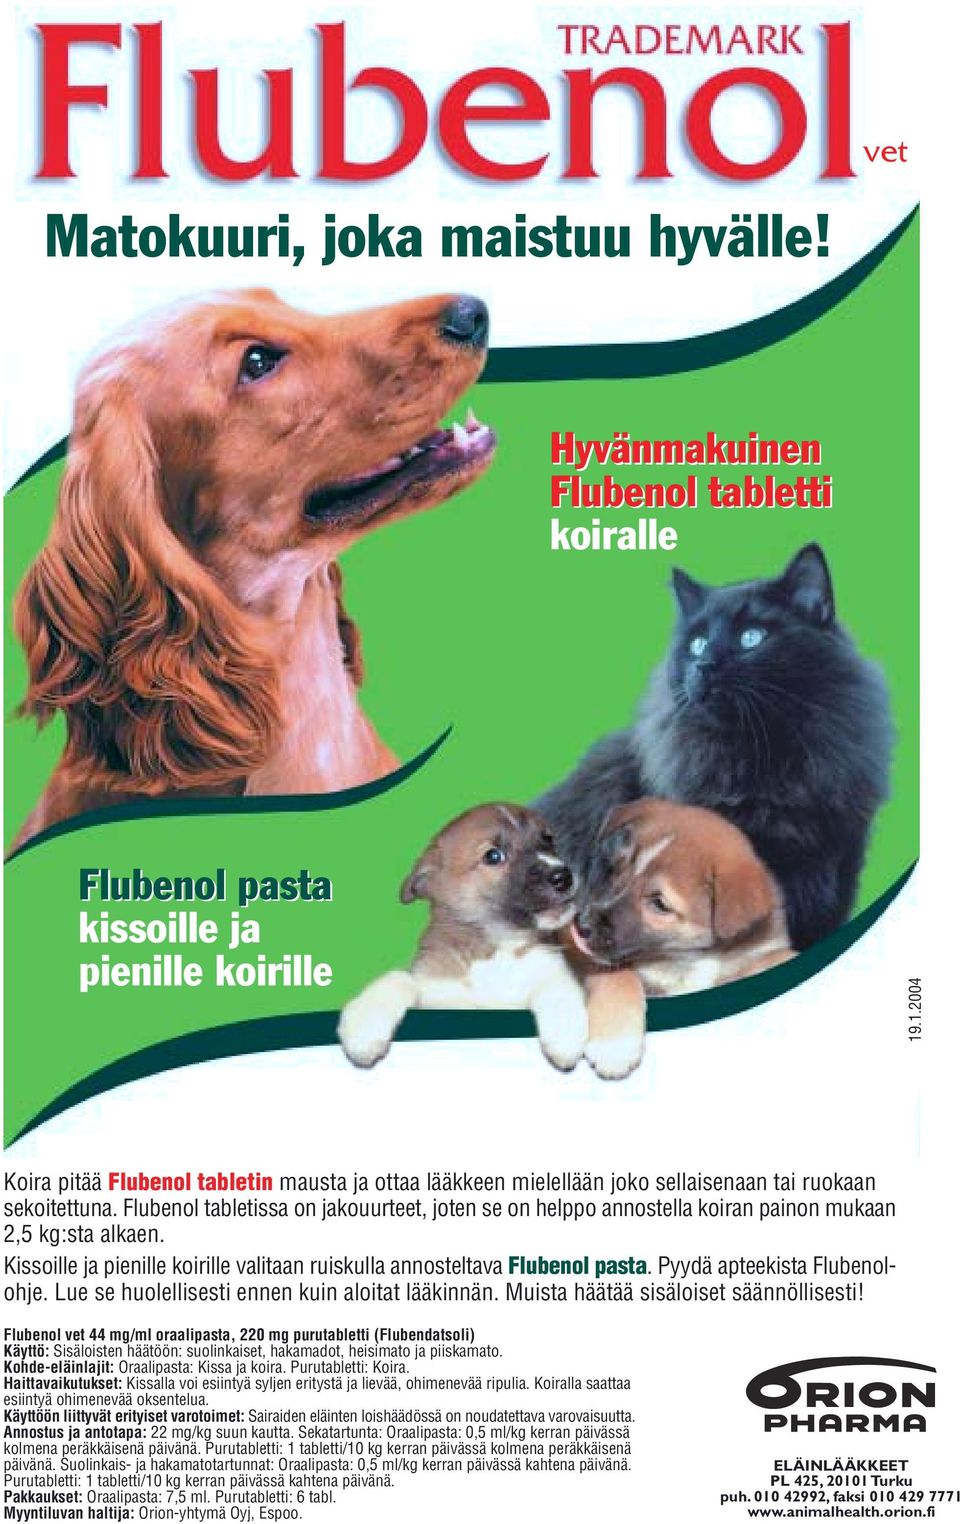 Flubenol tabletissa on jakouurteet, joten se on helppo annostella koiran painon mukaan 2,5 kg:sta alkaen. Kissoille ja pienille koirille valitaan ruiskulla annosteltava Flubenol pasta.